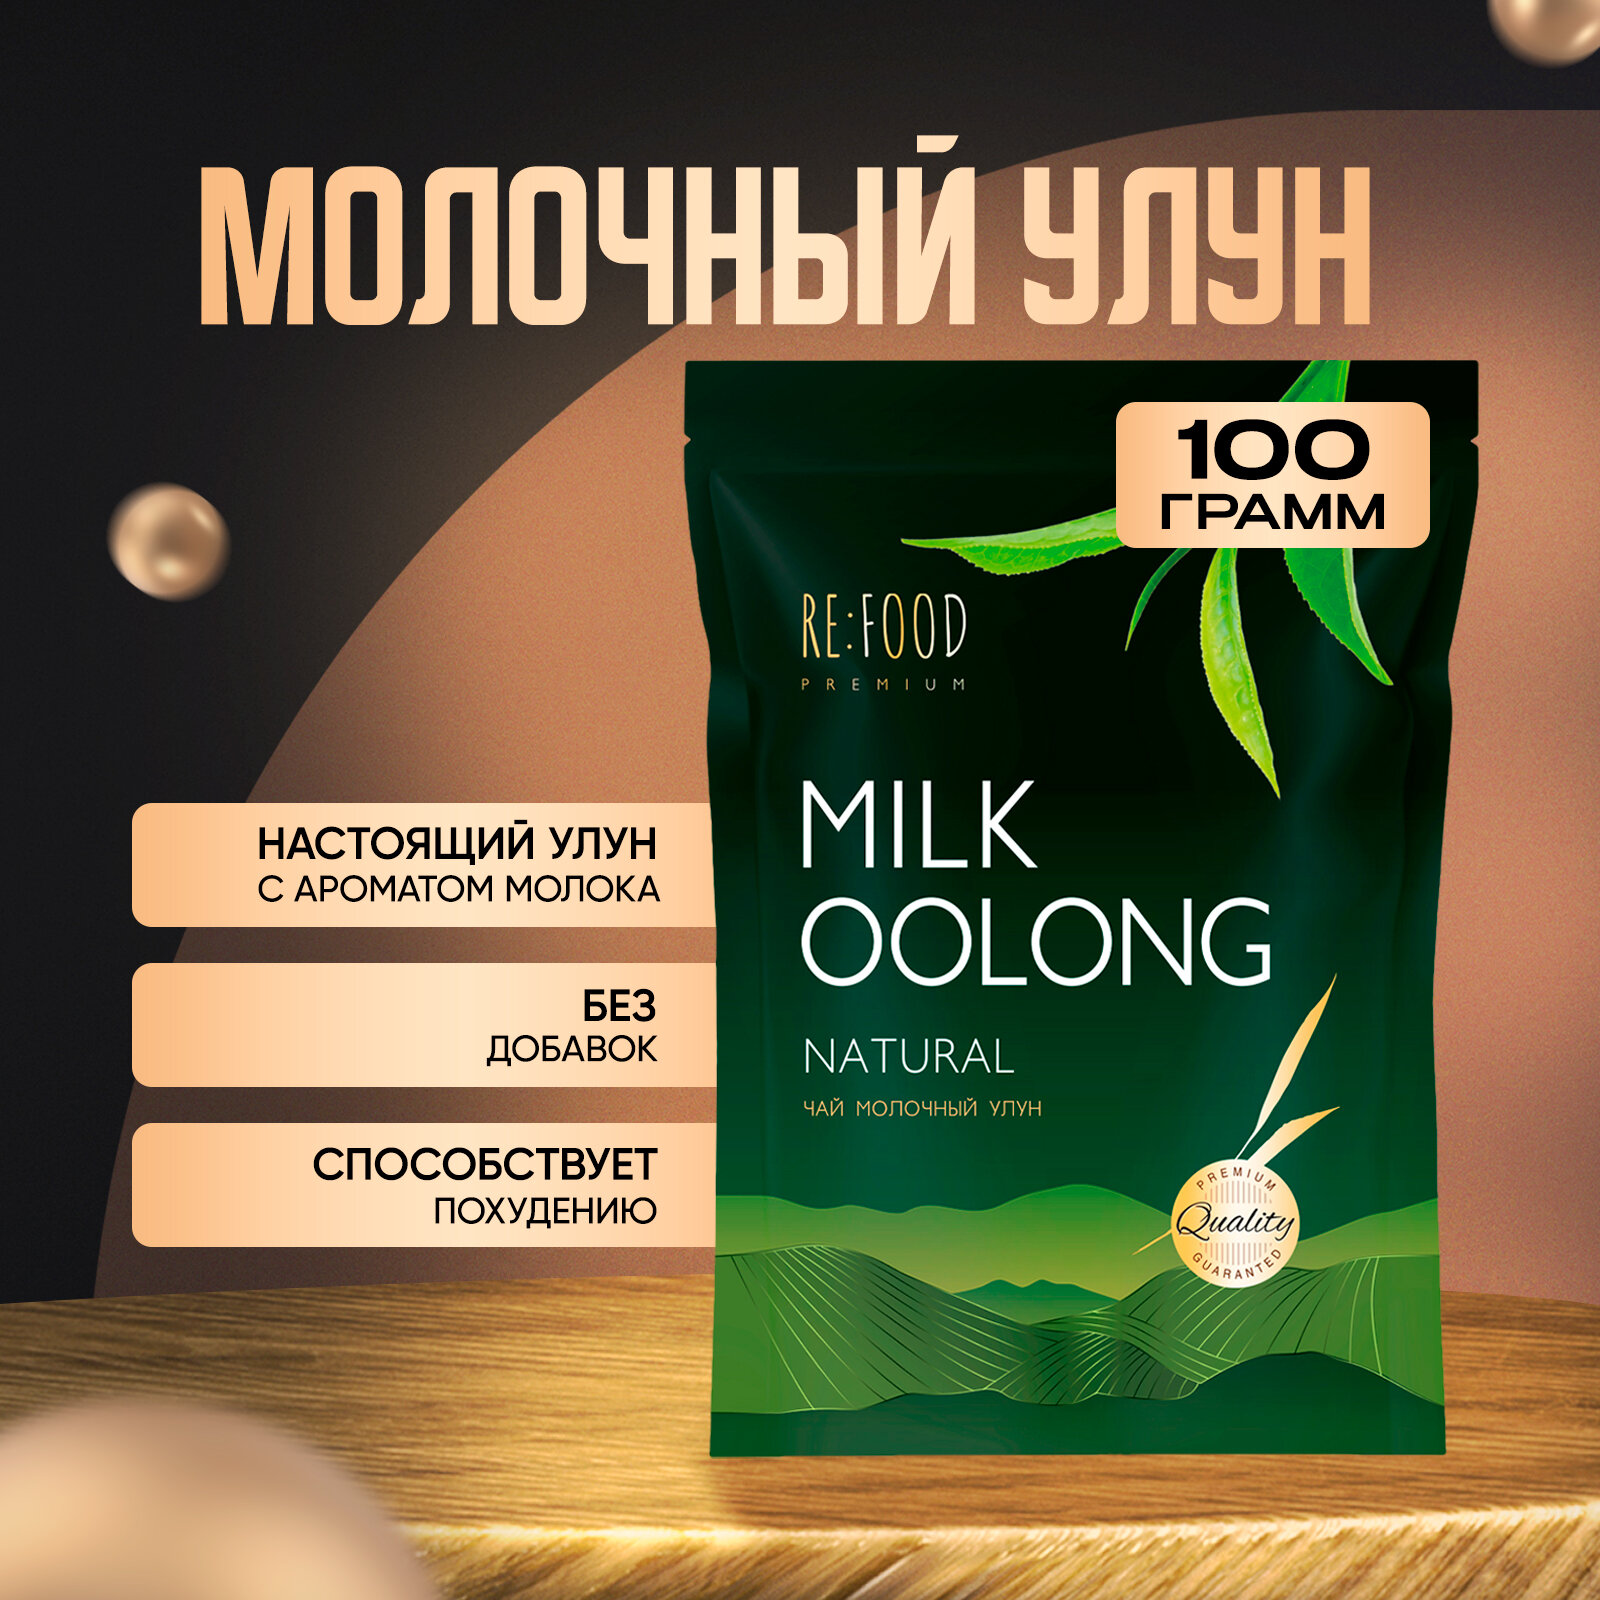 Китайский Молочный Улун PREMIUM 100 грамм (Олонг, Оолонг, Milk Oolong Tea) Китайский листовой чай, для похудения